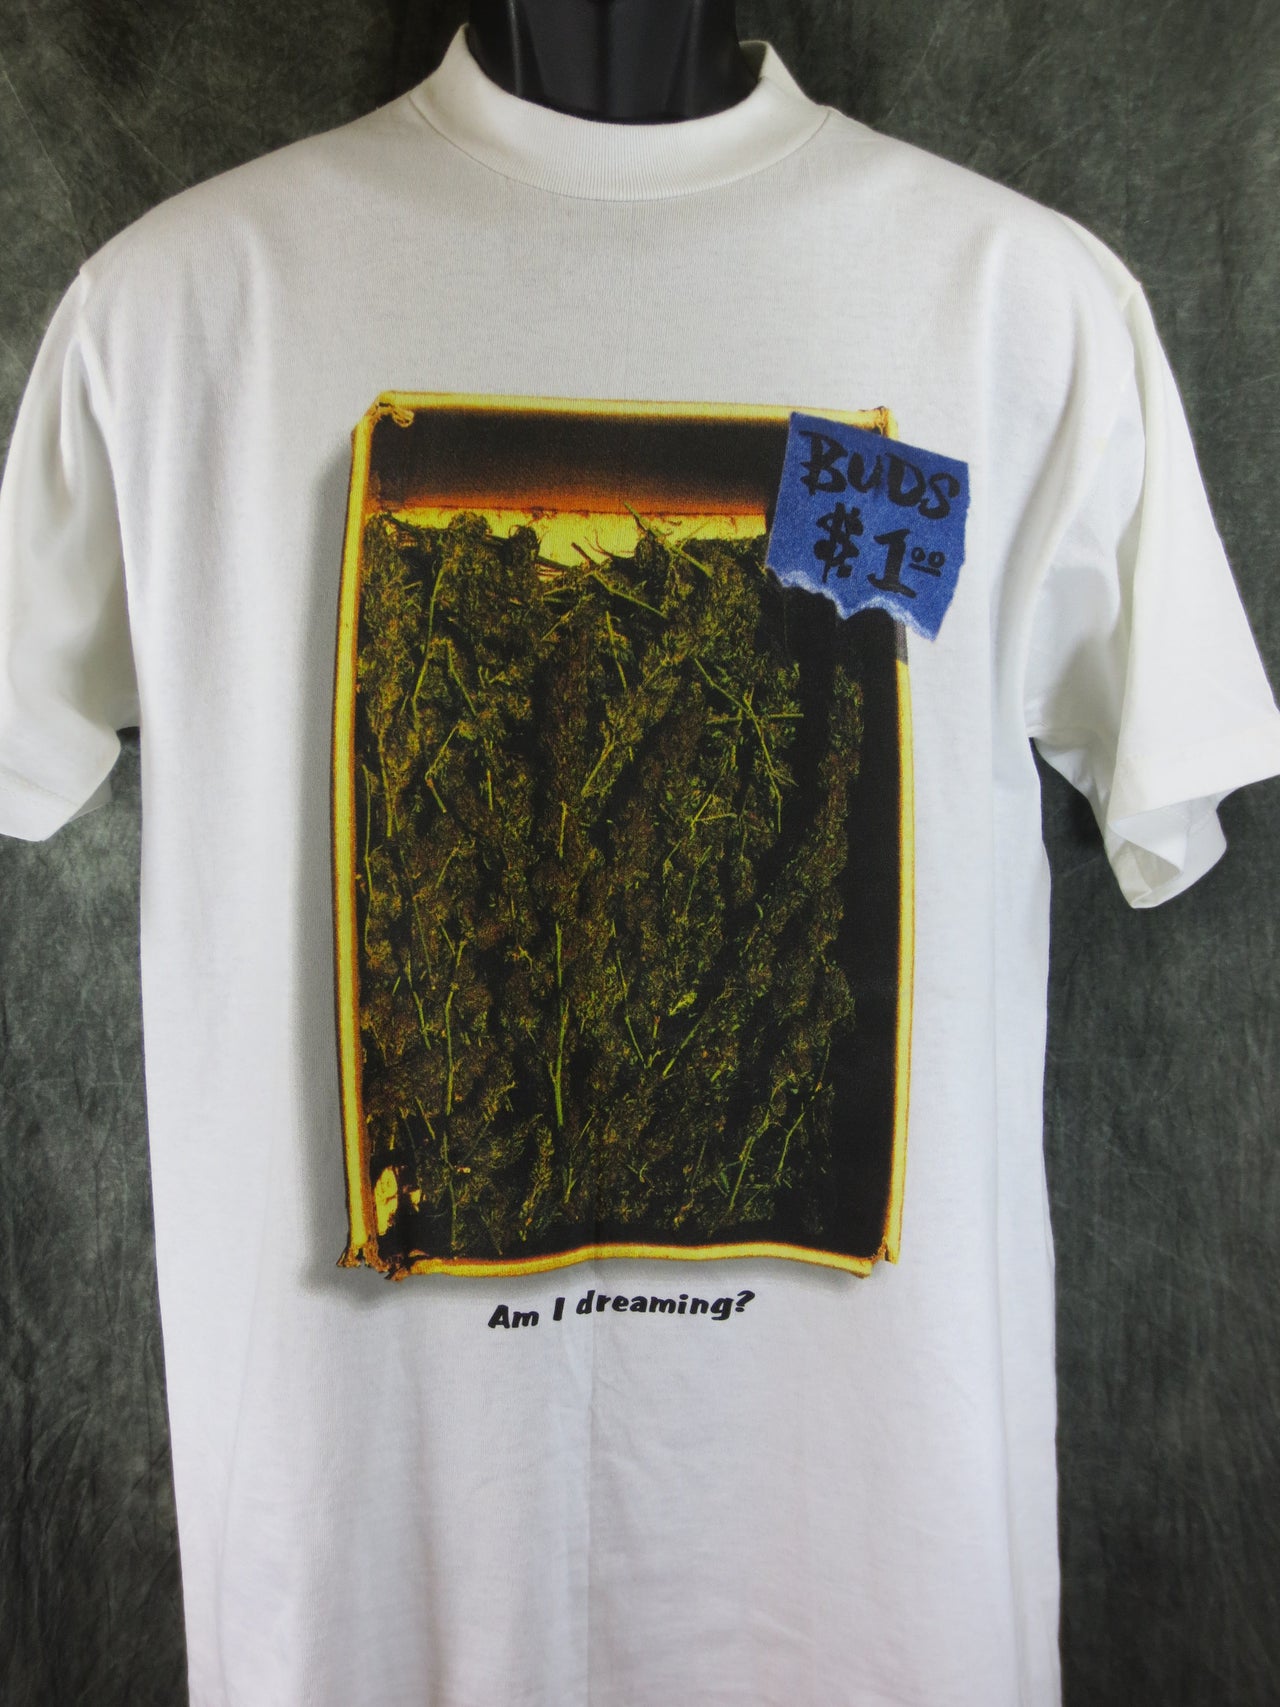 Buds $1.00 Tshirt - TshirtNow.net - 3